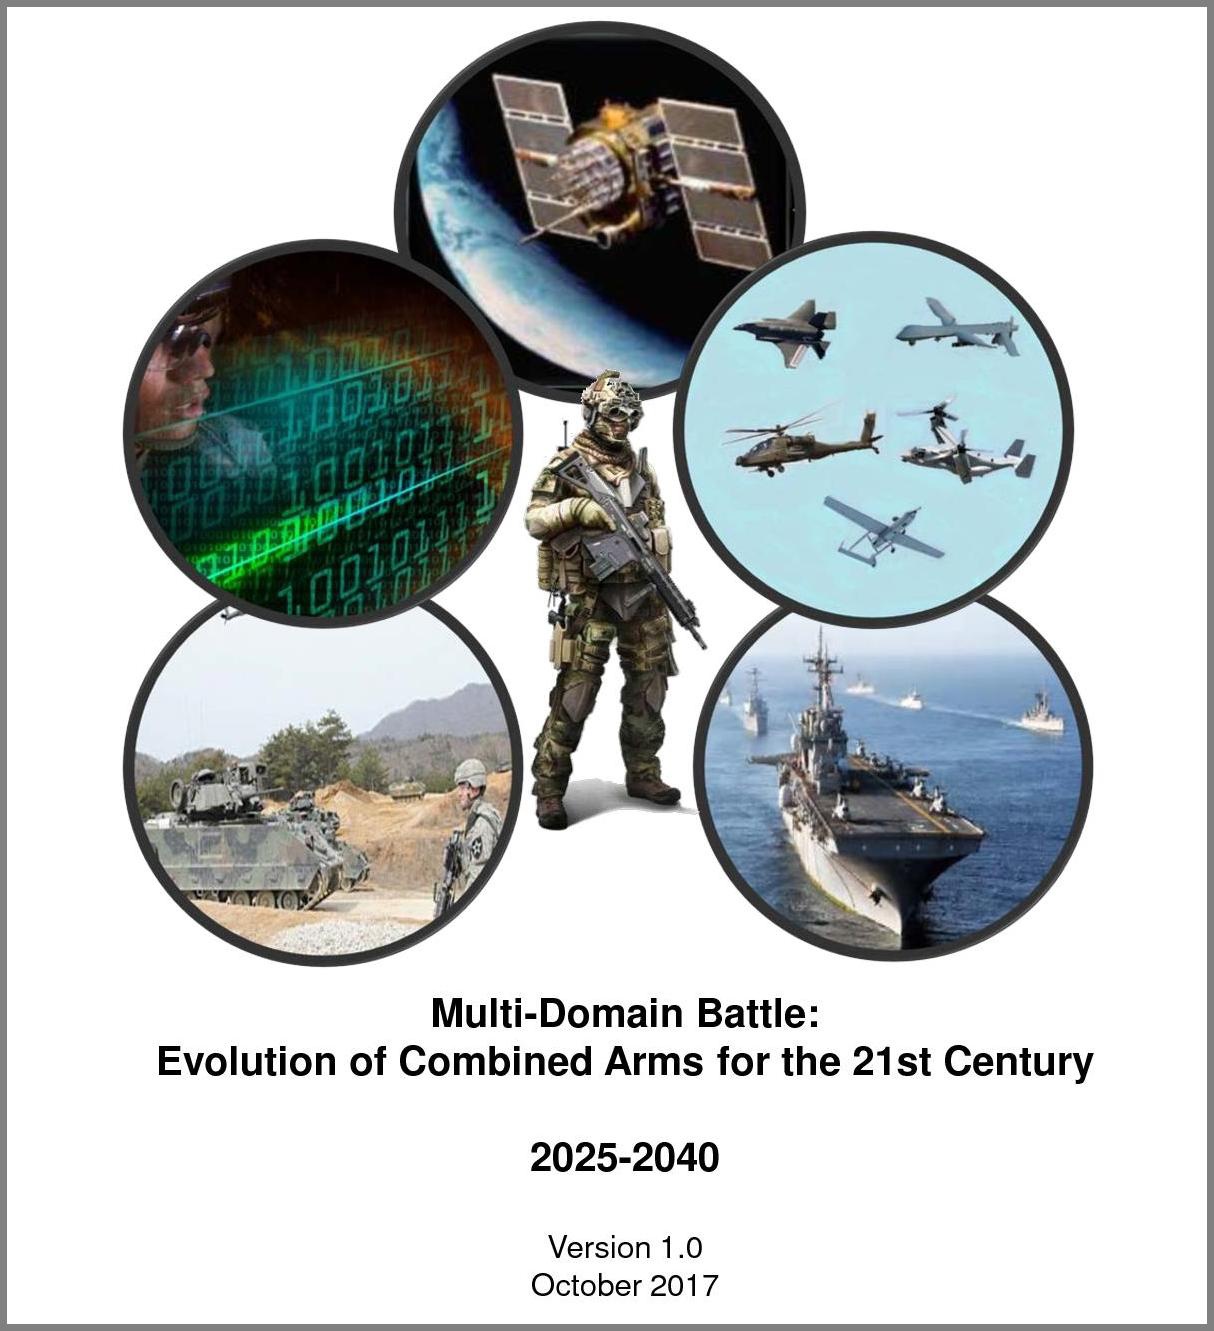 Концепция Multi-Domain Battle была разработана стратегами Пентагона в 2016-2017 гг. как ответ на военные реформы, которые шли в армиях России и Китая.